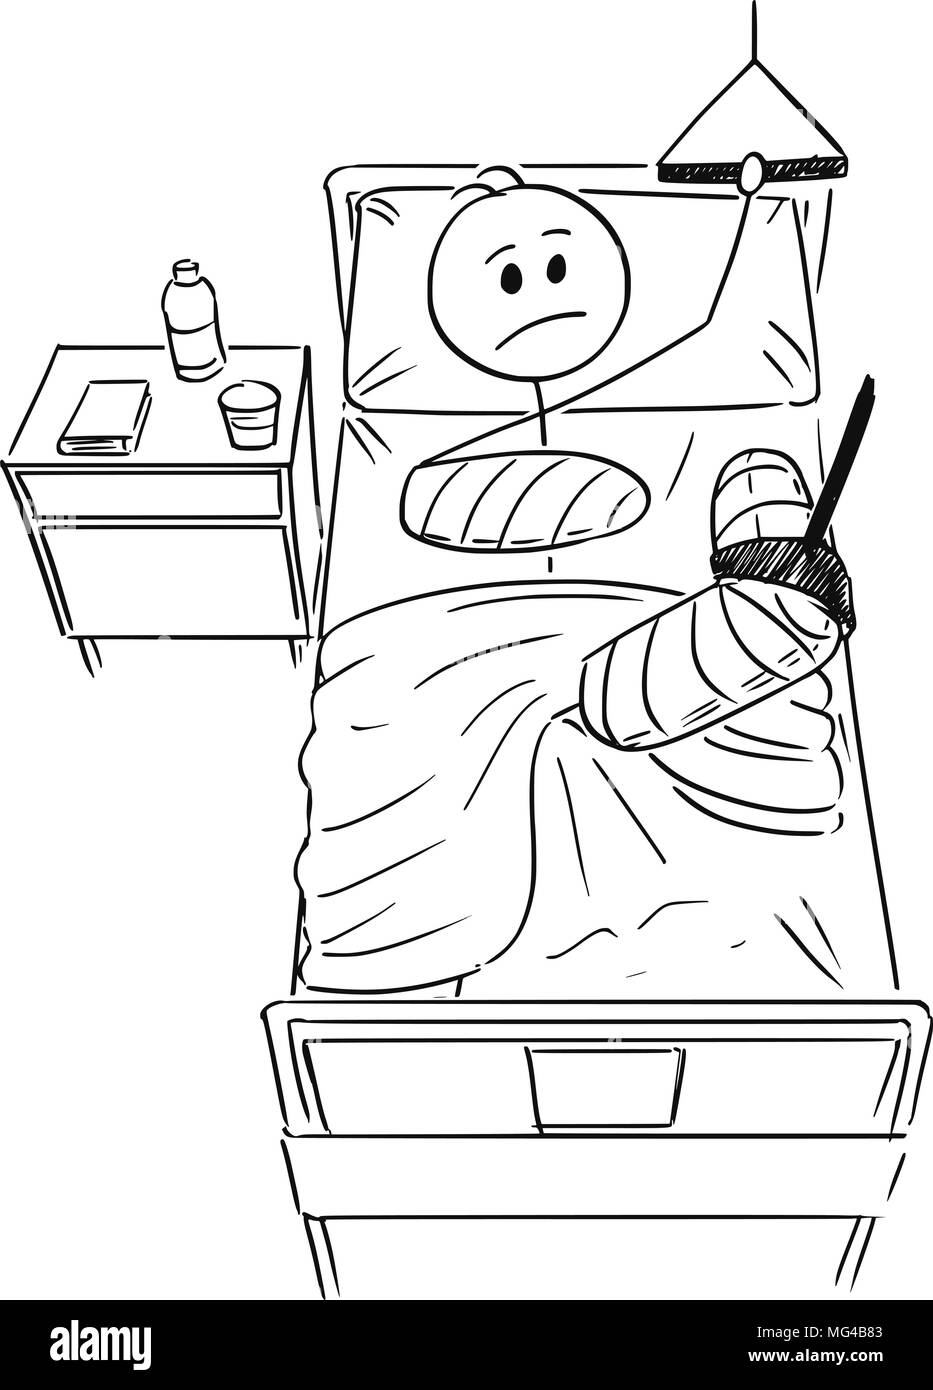 Caricature de l'homme ou homme d'affaires avec jambe cassée et le bras allongé sur le lit à l'hôpital Illustration de Vecteur